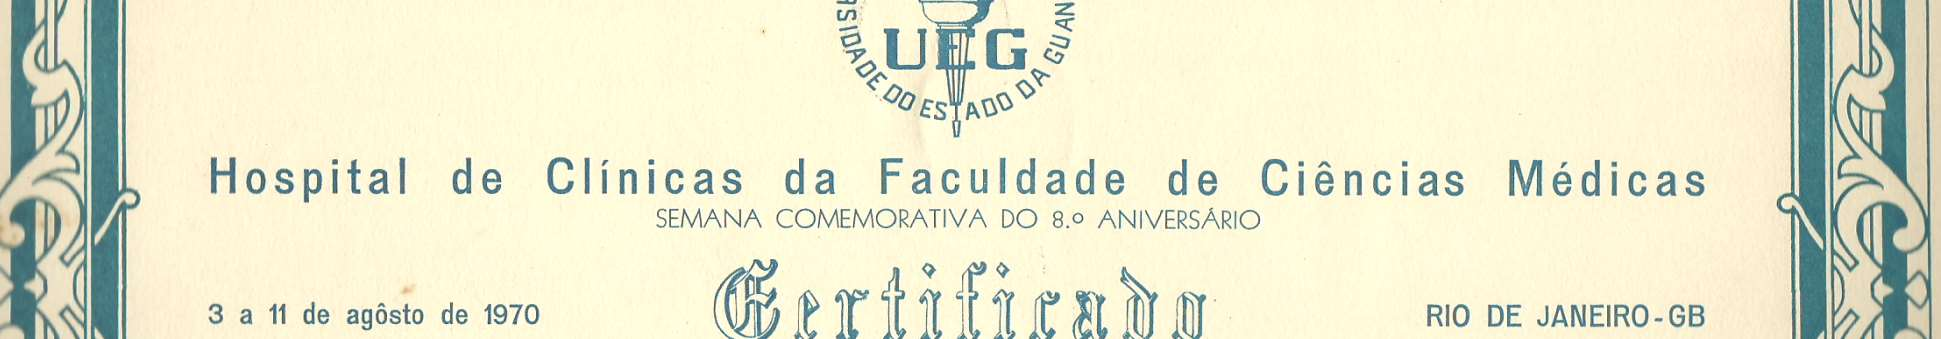 1970:Certificado